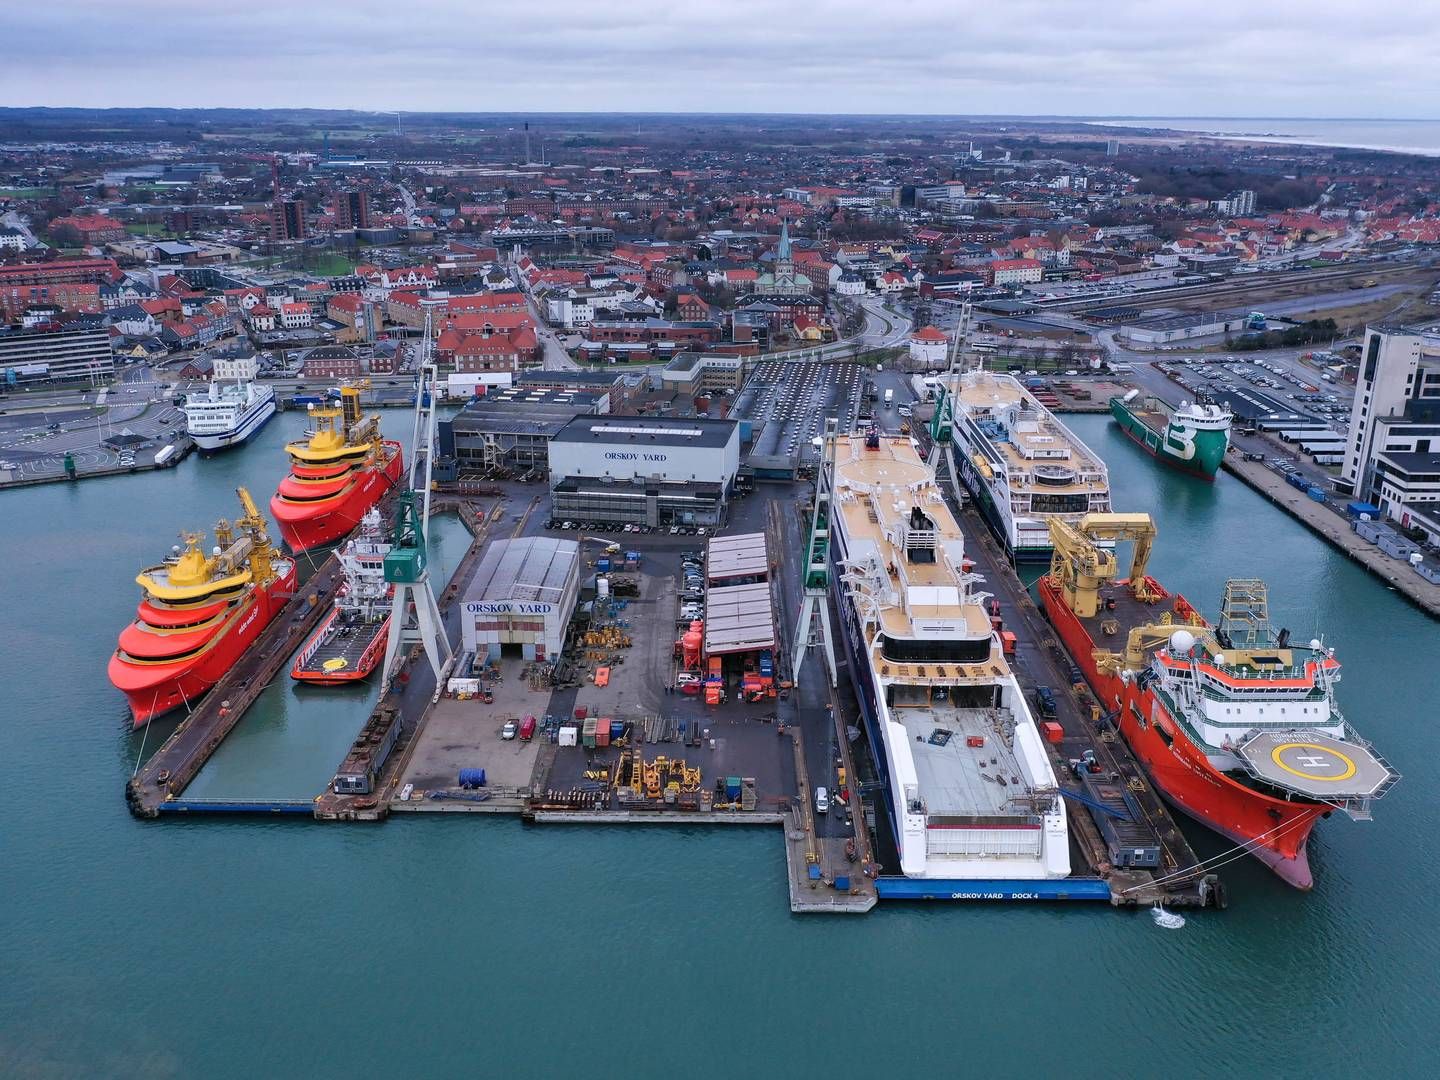 Orskov Yard ligger i Frederikshavn og fokuserer på reparationer og vedligehold af skibe. | Foto: Orskov Yard